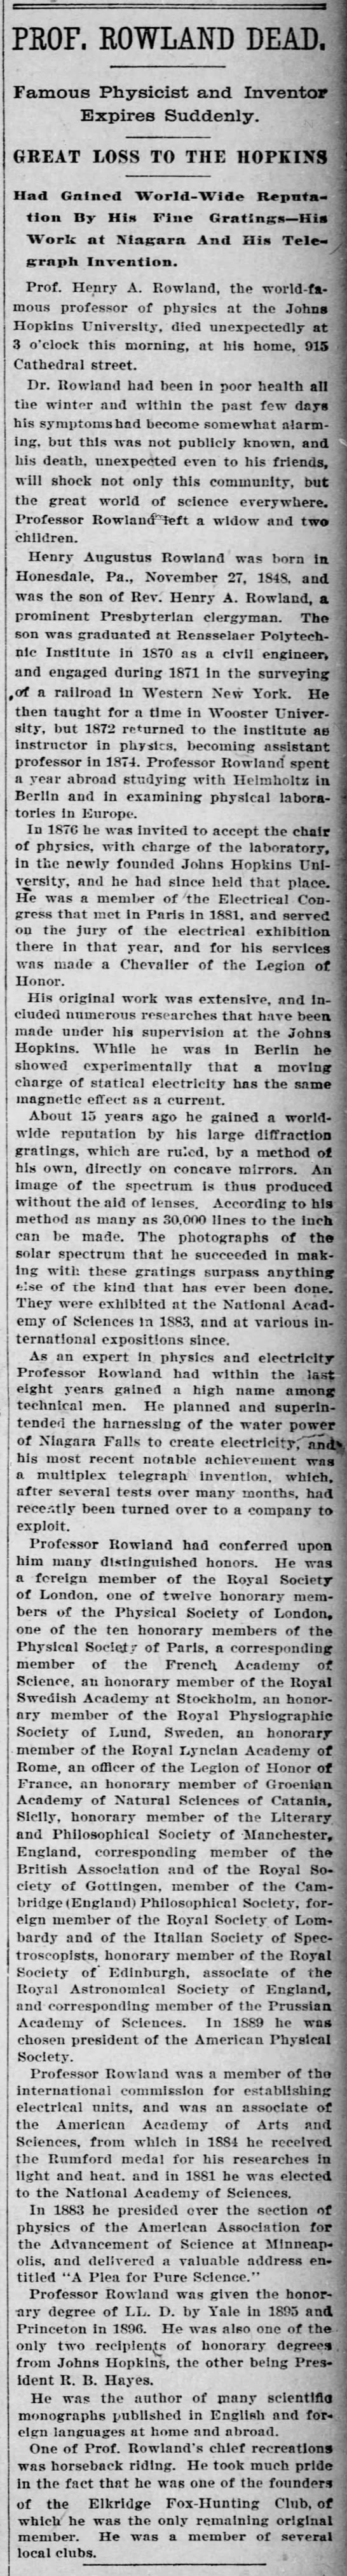 Rowland, Prof, Dead, Baltimore Sun, Tue 16 Apr 1901, p.1, col.8 - 